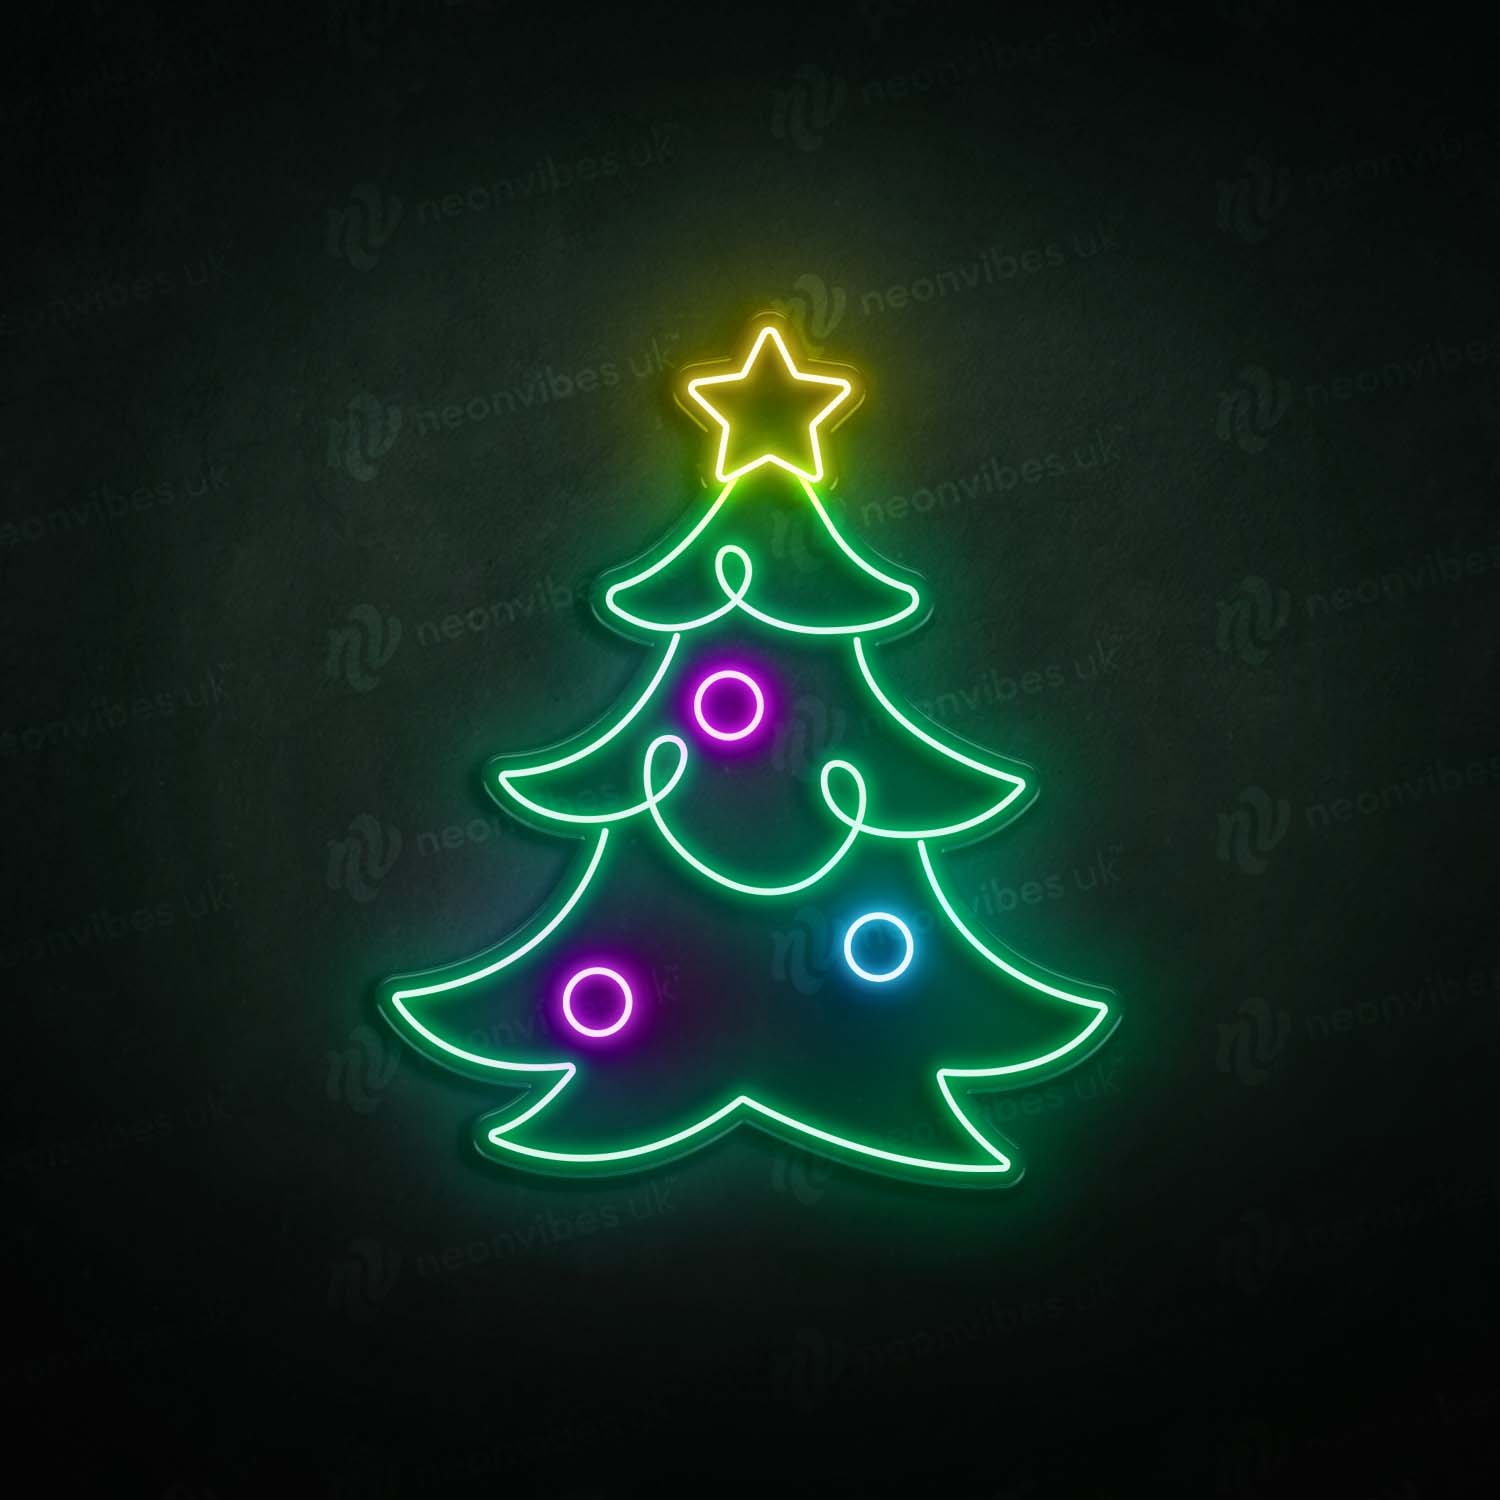 Christmas Tree neon sign